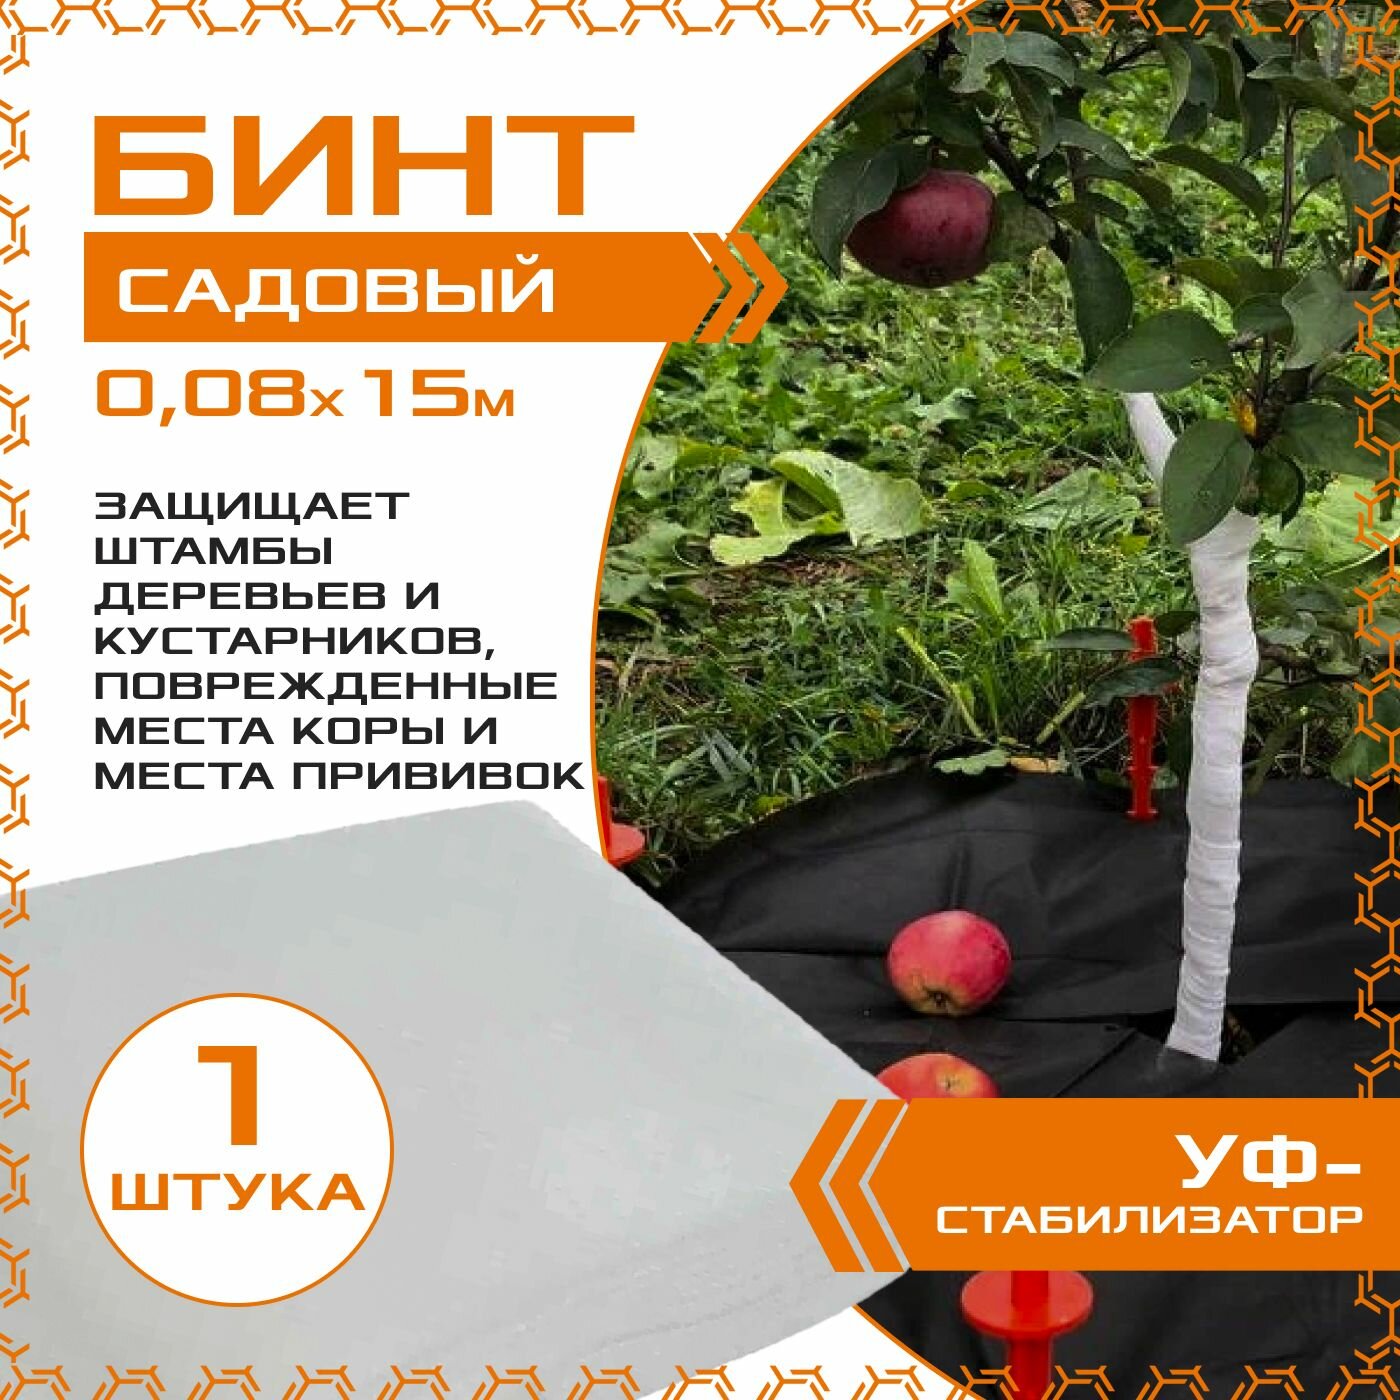 Бинт садовый 0.08м х 15м (1шт.), с УФ-стабилизатором, для защиты деревьев и кустарников, спанбонд